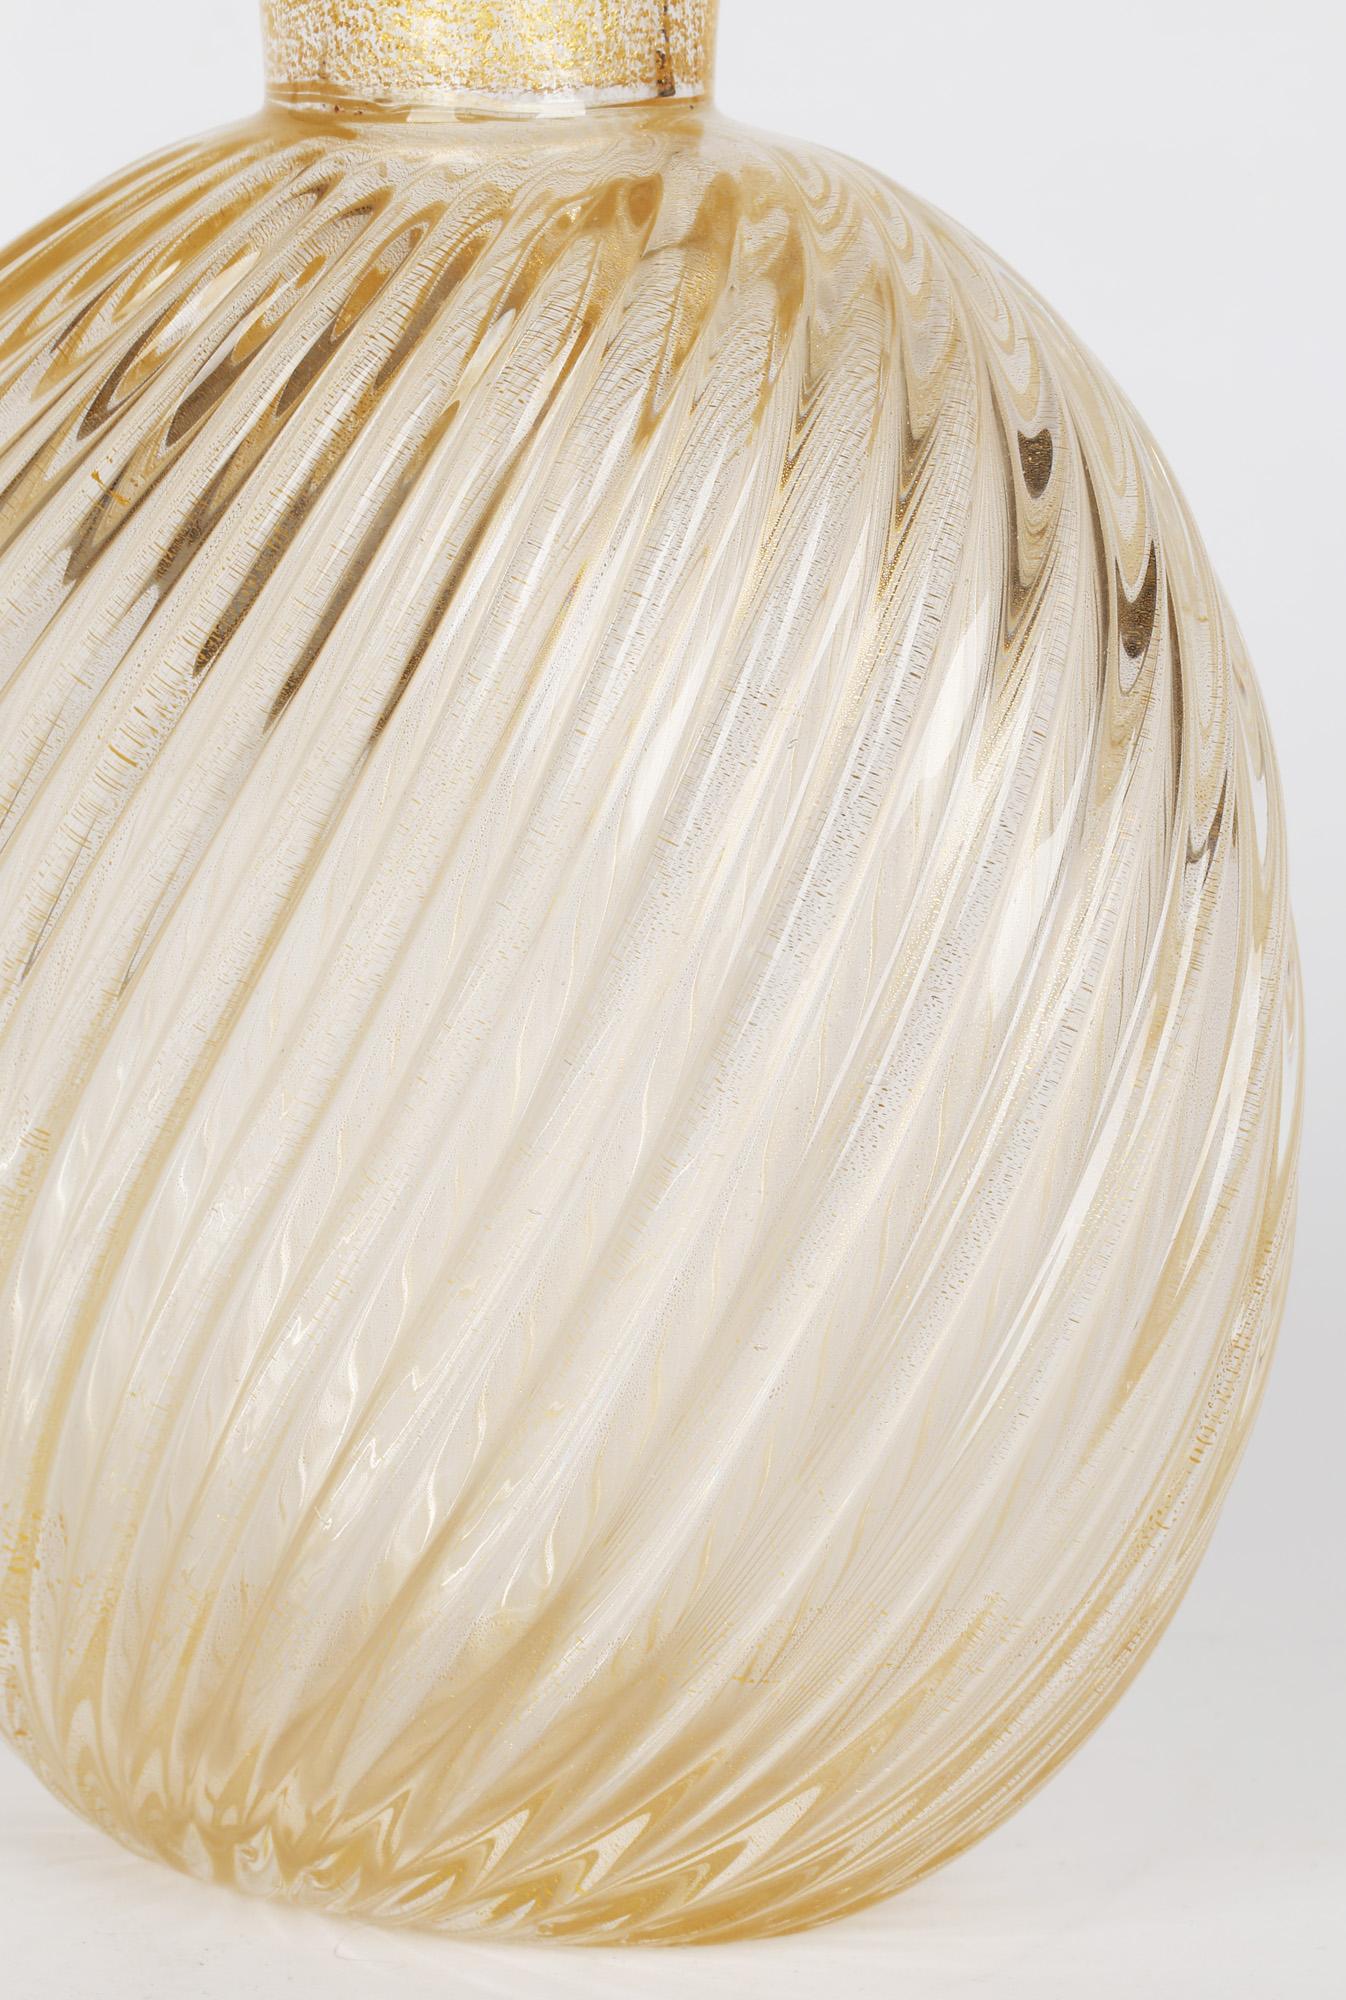 Flavio Poli for Seguso Vetri D'Art Incrociato Oro Glass Vase For Sale 3